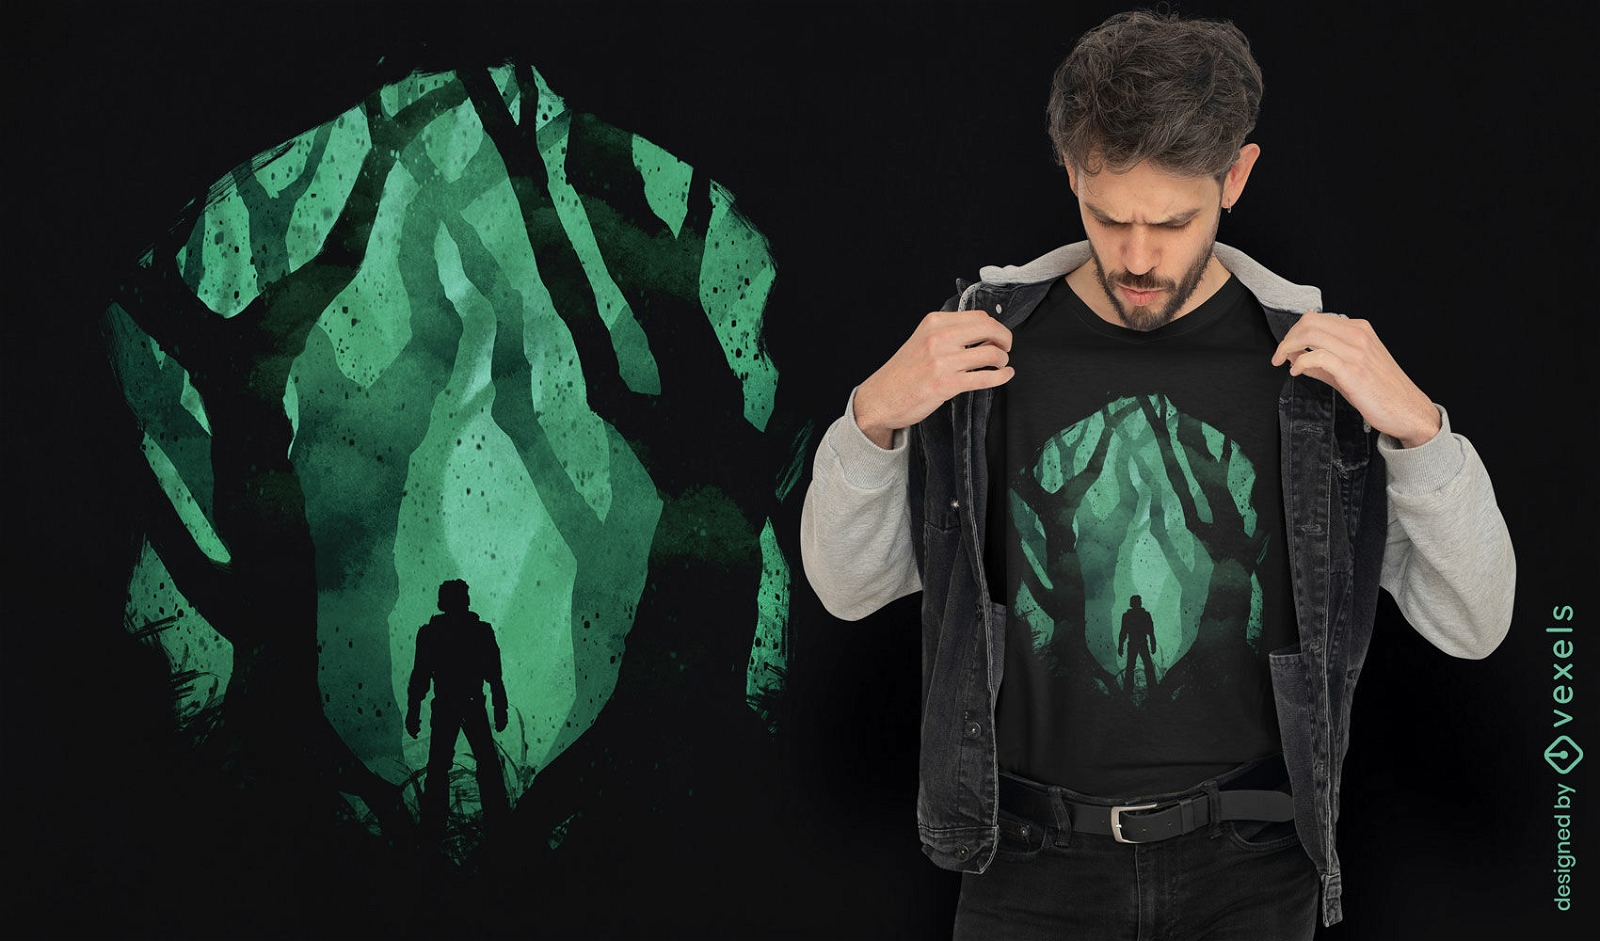 Dark forest creature t-shirt design